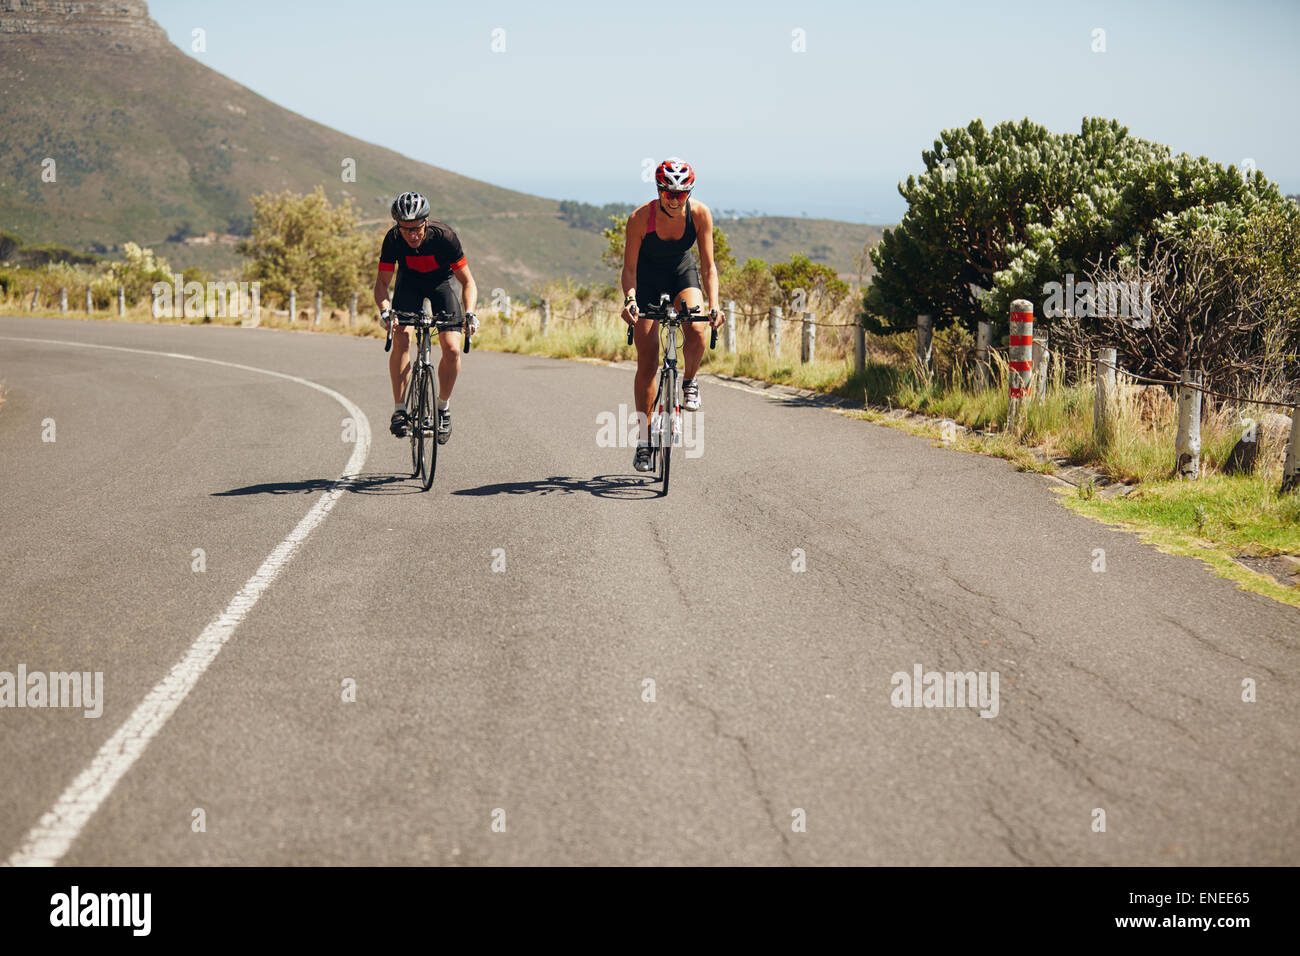 Radsportler, die Fahrräder auf offener Straße. Triathleten auf Fahrrädern Radfahren. Üben für Triathlon-Rennen. Stockfoto